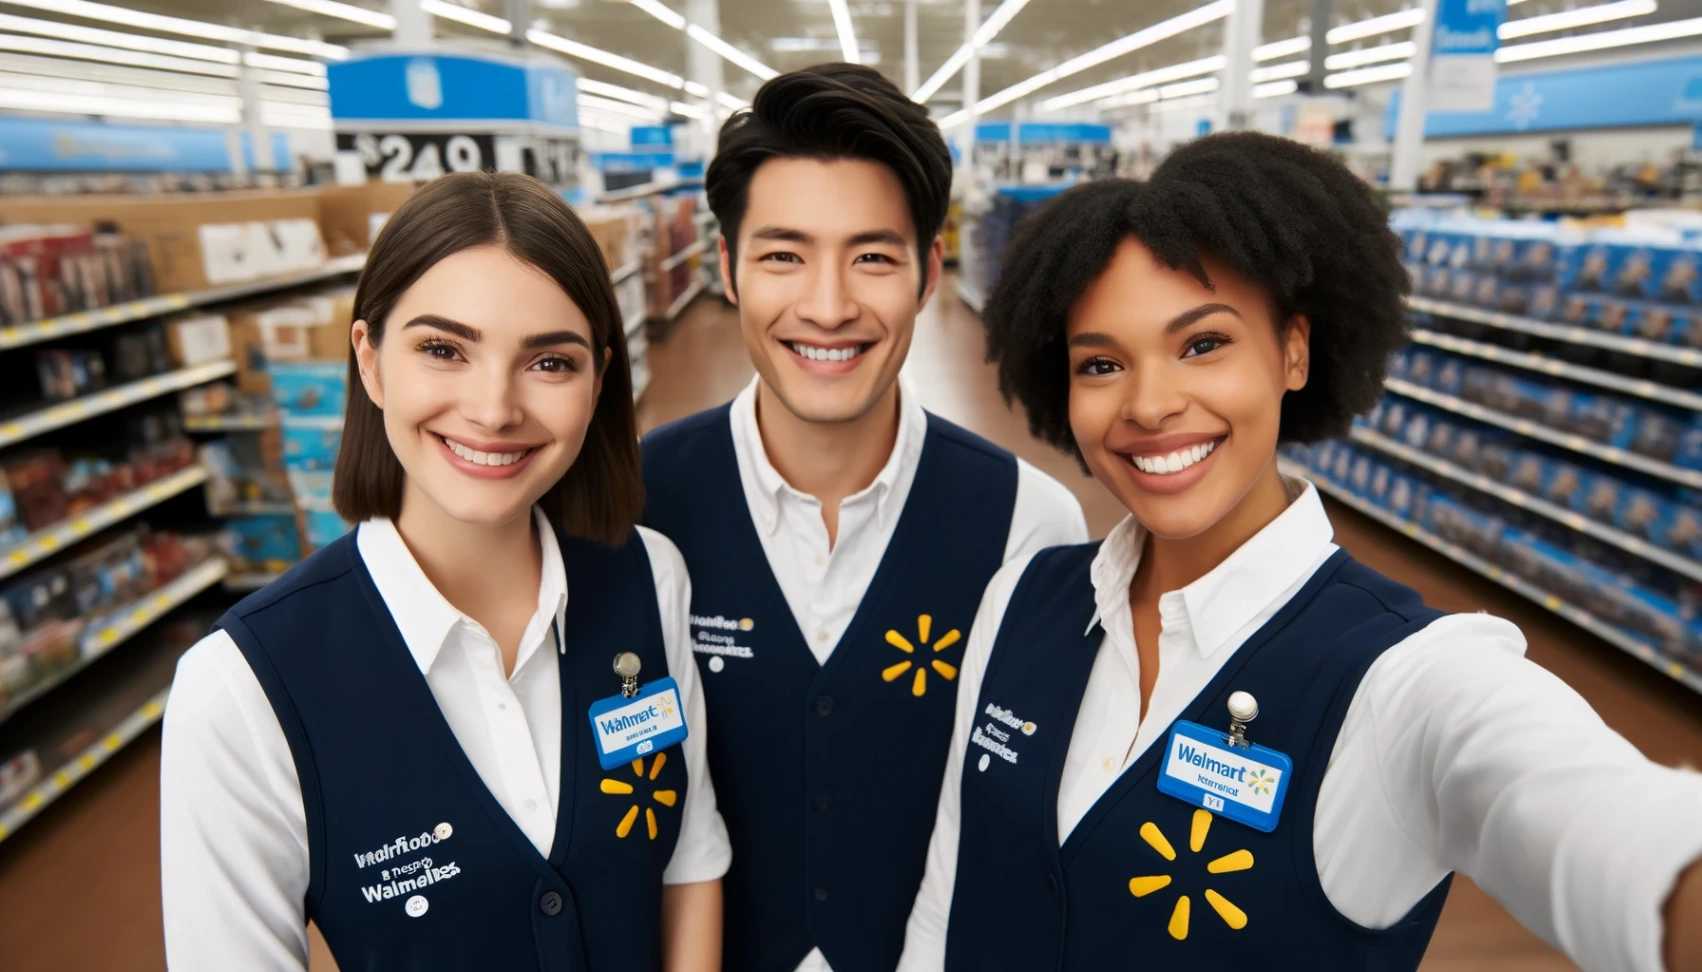 Carreras en Walmart: Paso a paso hacia tu exitosa solicitud